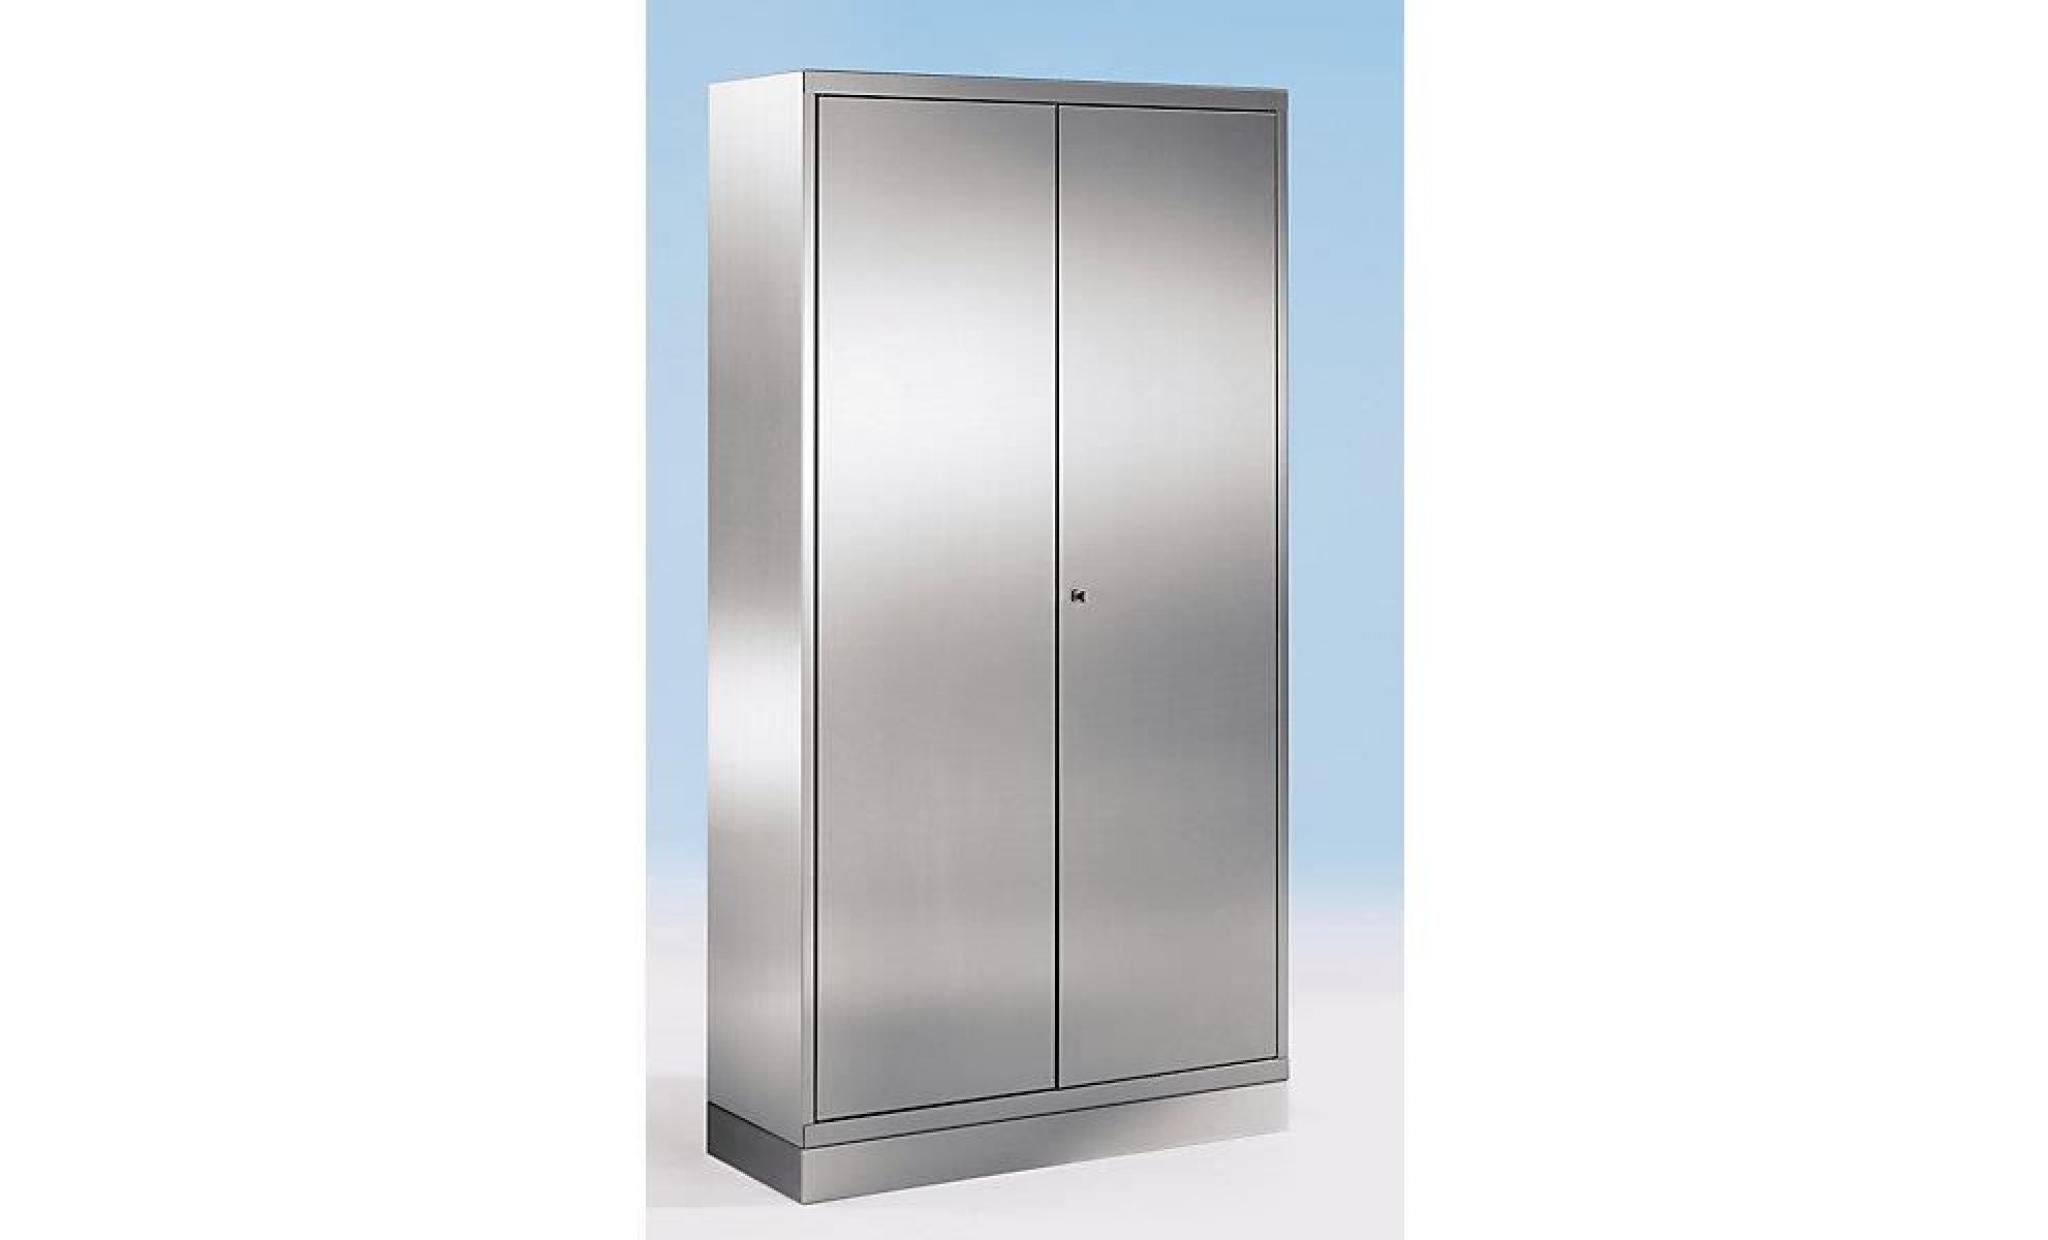 armoire universelle en inox   armoire pour dossiers/de stockage h x l x p 1800 x 600 x 500 mm   armoire armoire de vestiaire armoire pas cher